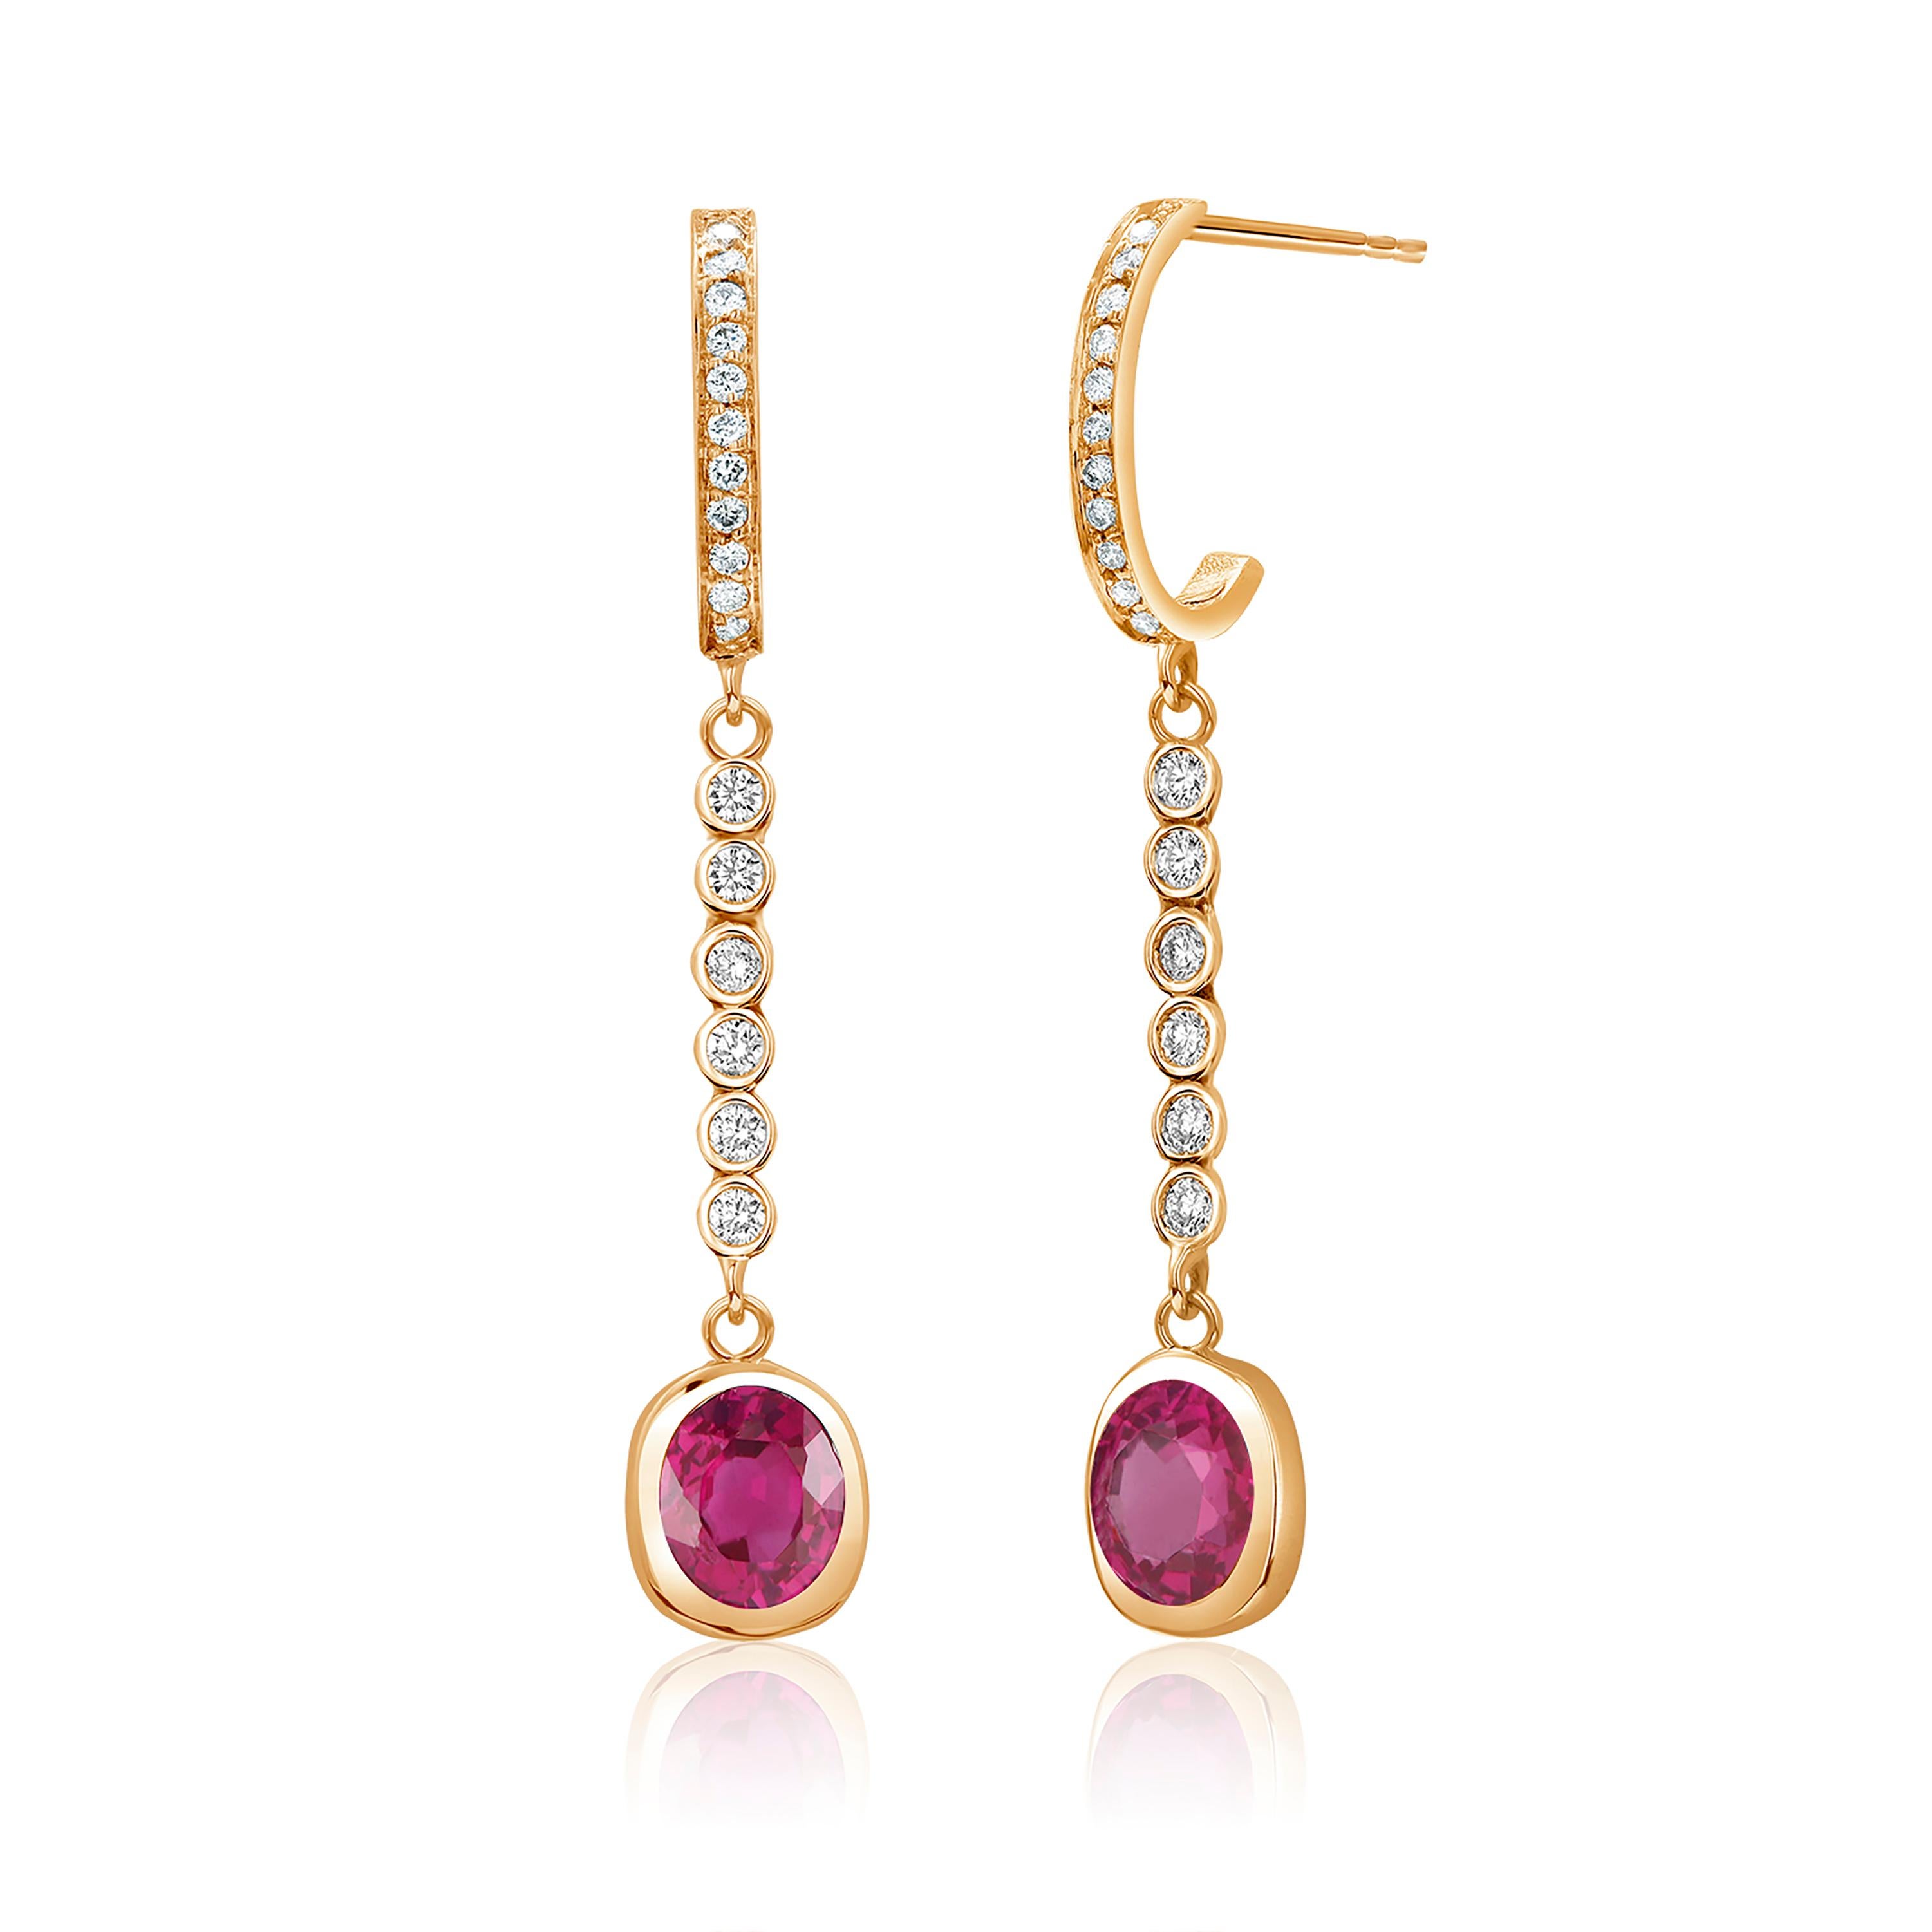 Bezel Set Burma Ruby Diamond 1.75 Carat 1.6 Inch Long Yellow Gold Earrings For Sale 2